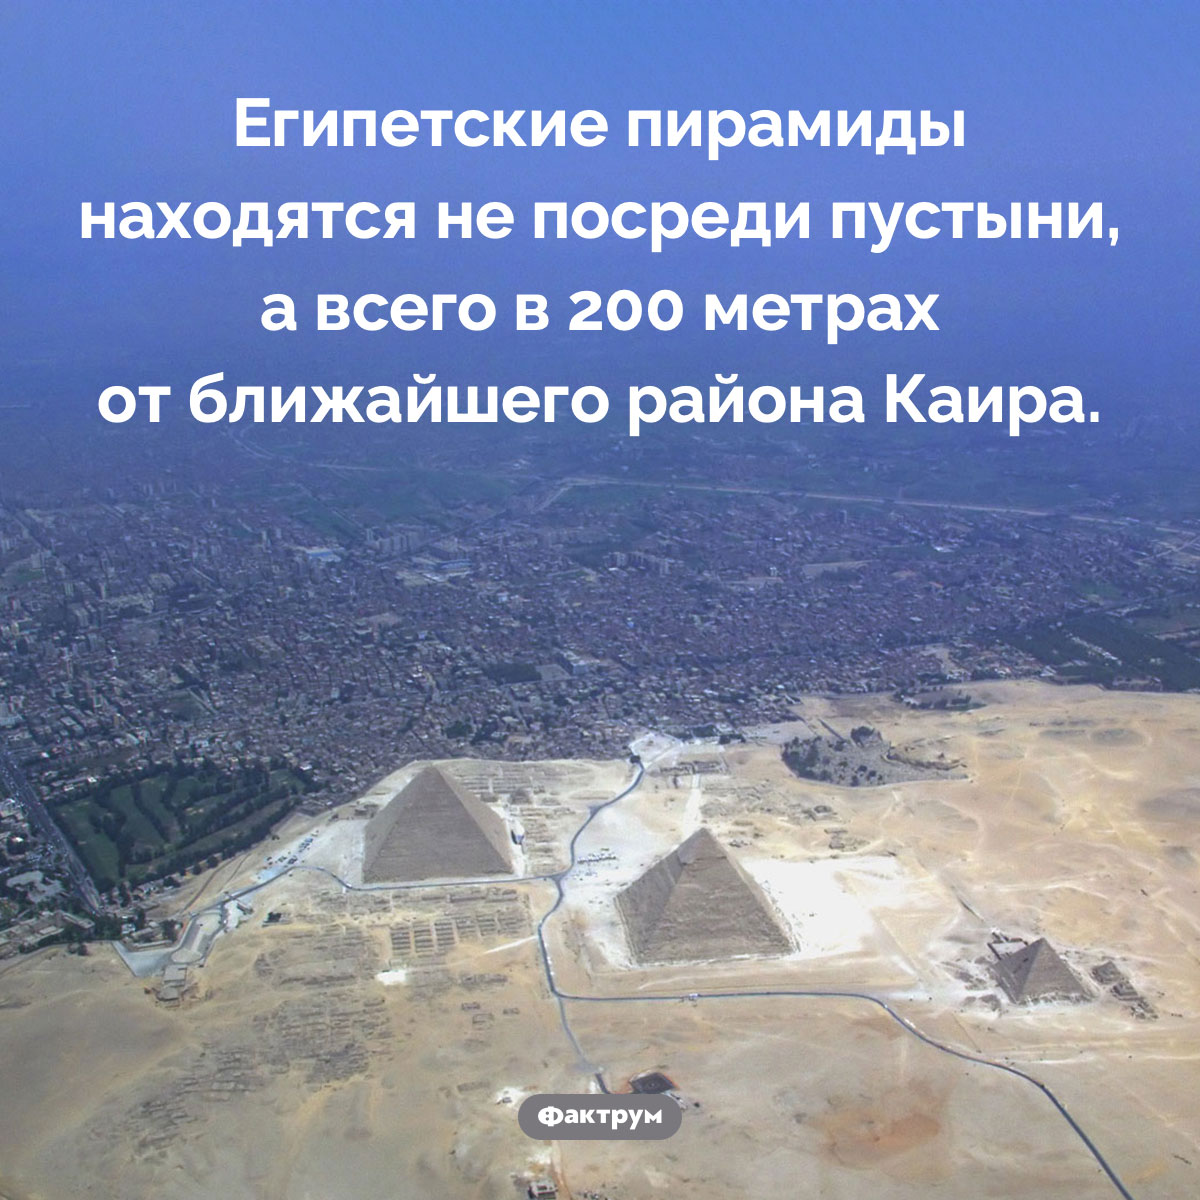 Далеко ли от городов расположены египетские пирамиды. Египетские пирамиды находятся не посреди пустыни, а всего в 200 метрах от ближайшего района Каира.